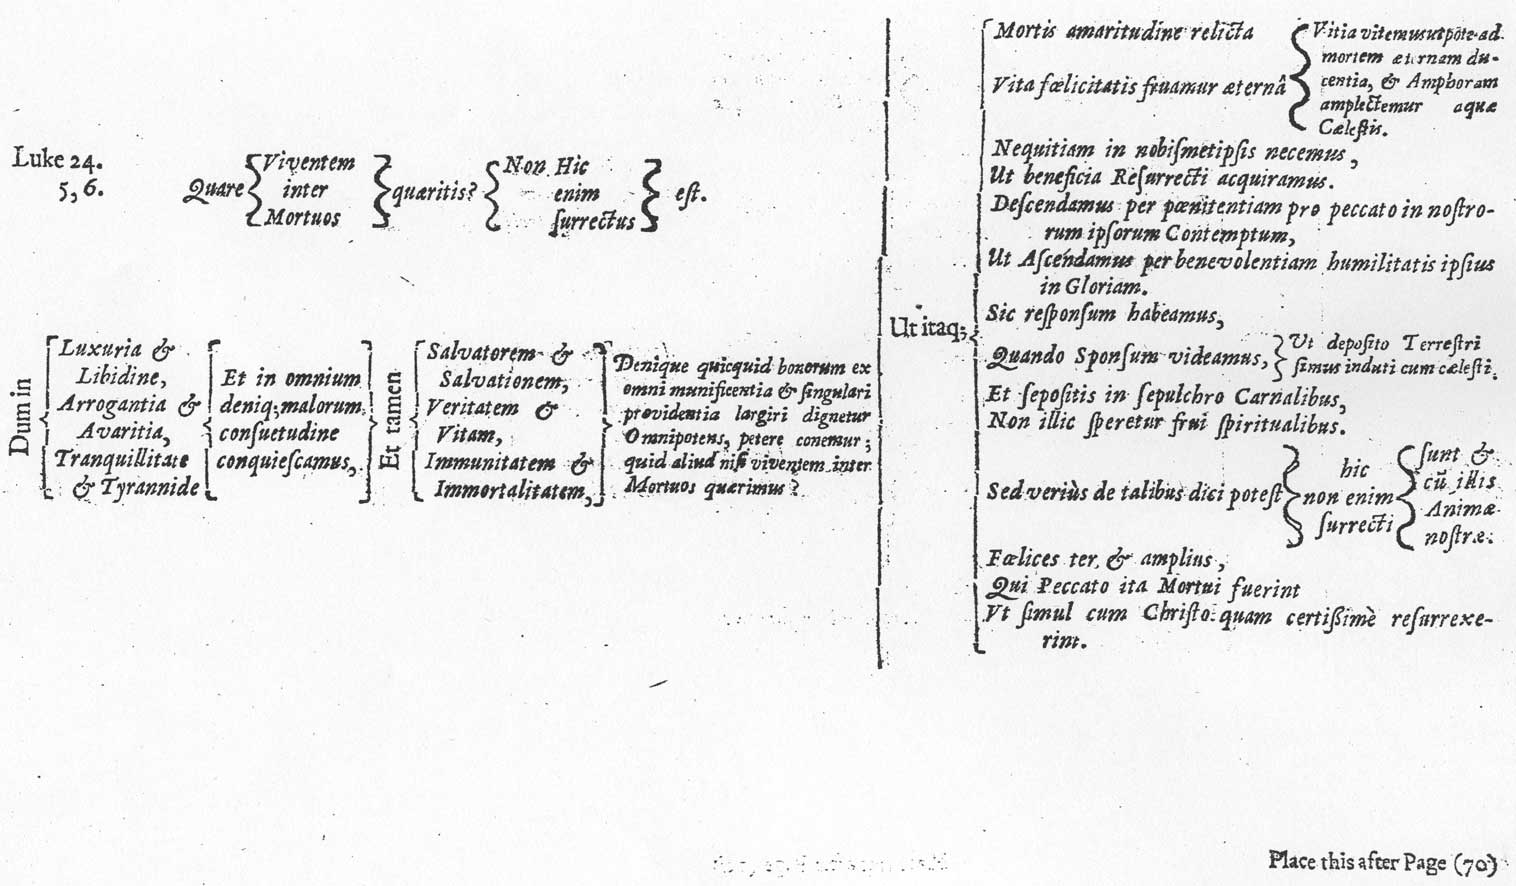 Otia Sacra, Quare quareritis, from Mildmay Fane 'Otia Sacra' 1648, printed size 25.79cm wide by 14.89cm high